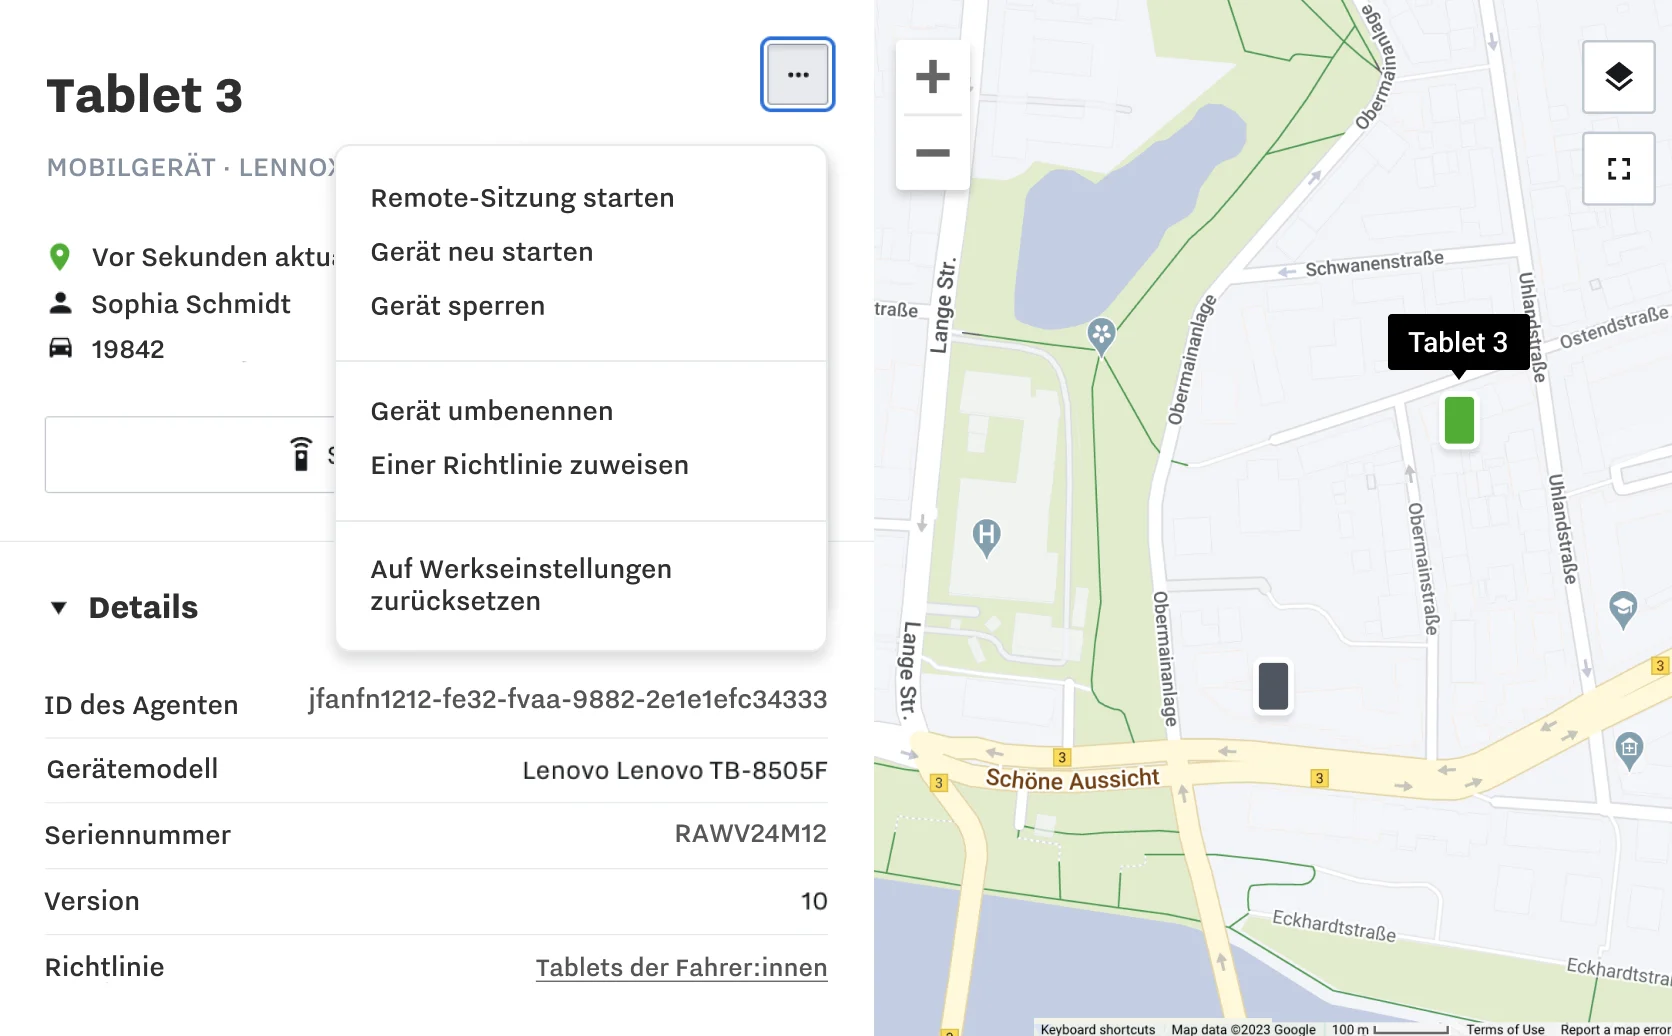 Produktbild aus dem Samsara-Dashboard mit Informationen zum Mobilgerät und einer Karte mit den Standorten der Mobilgeräte